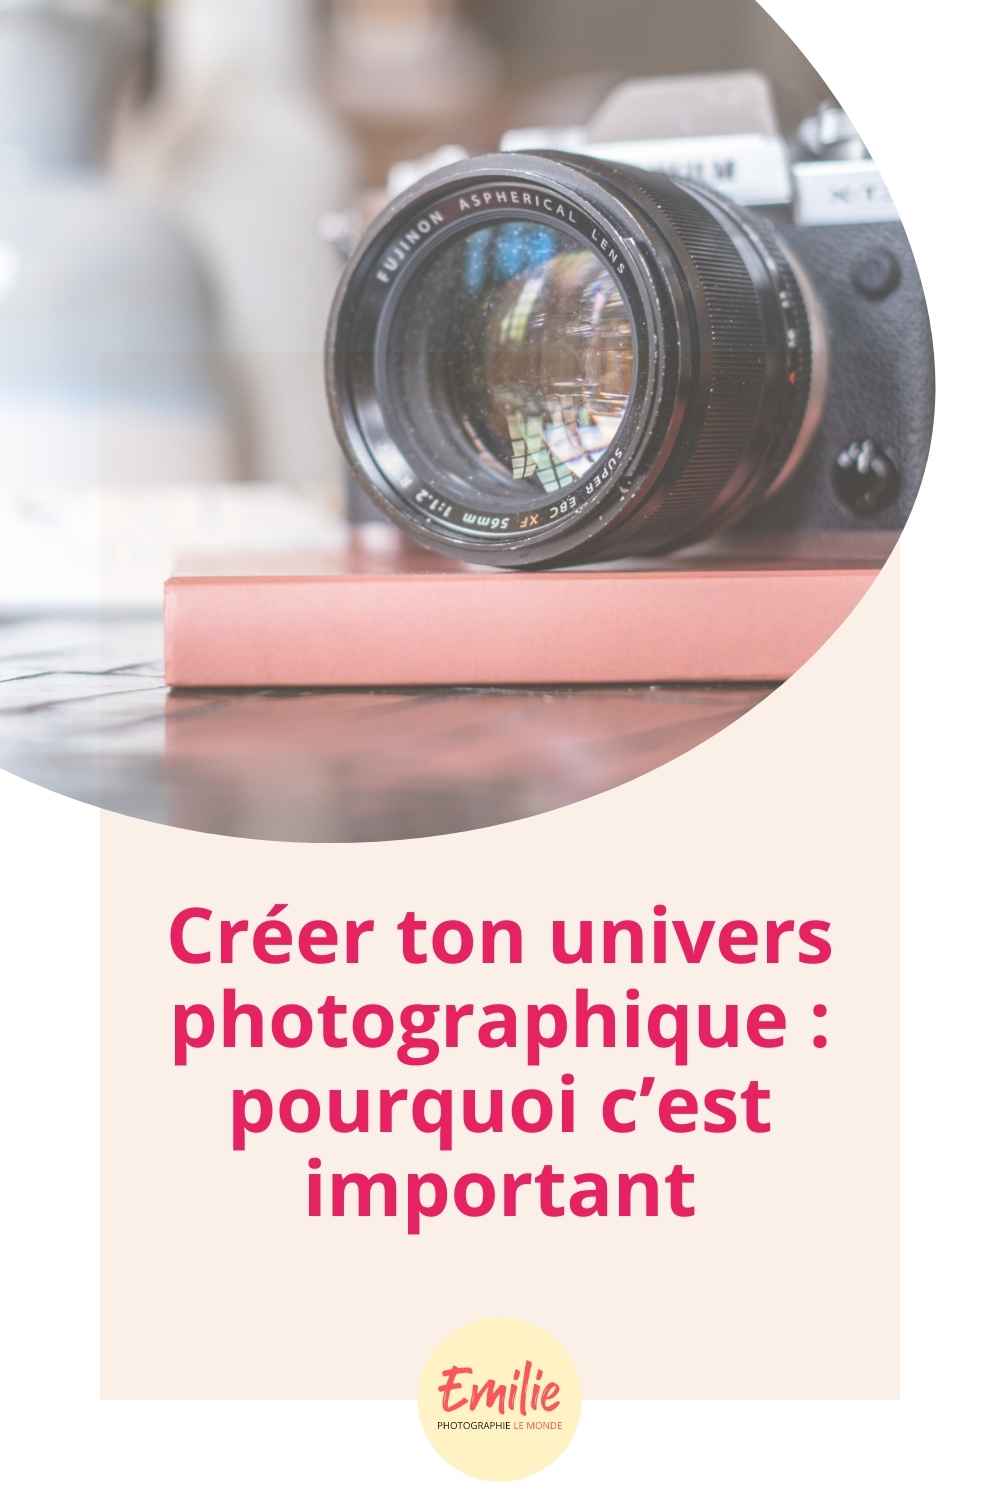 Photographe entreprise bordeaux branding instagram